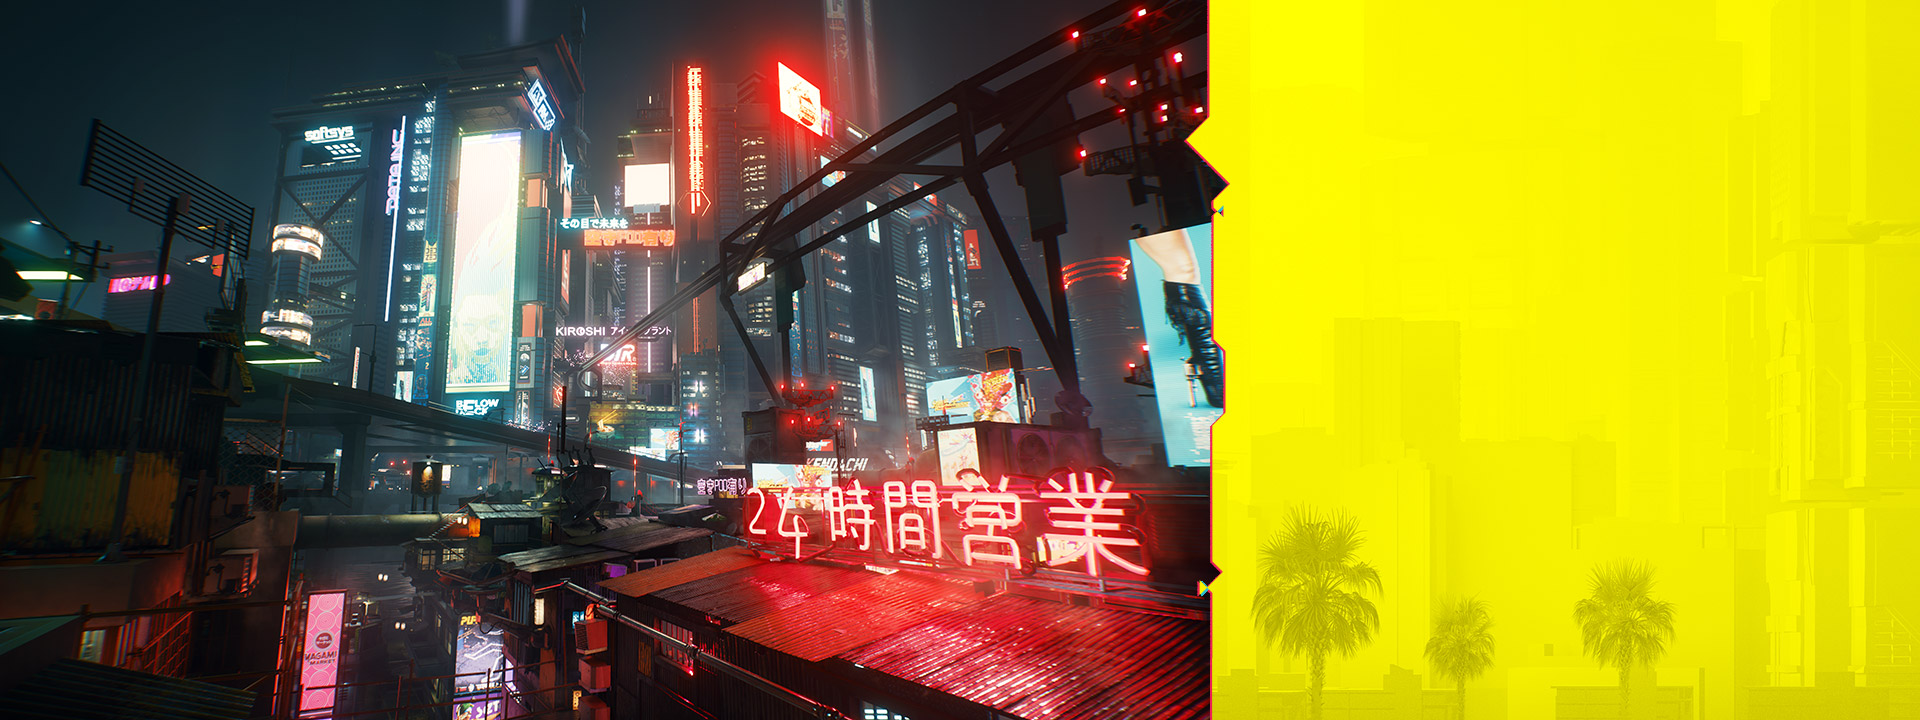 Neonskyltar i Night City lyser mot en dimmig stadsbild på natten.